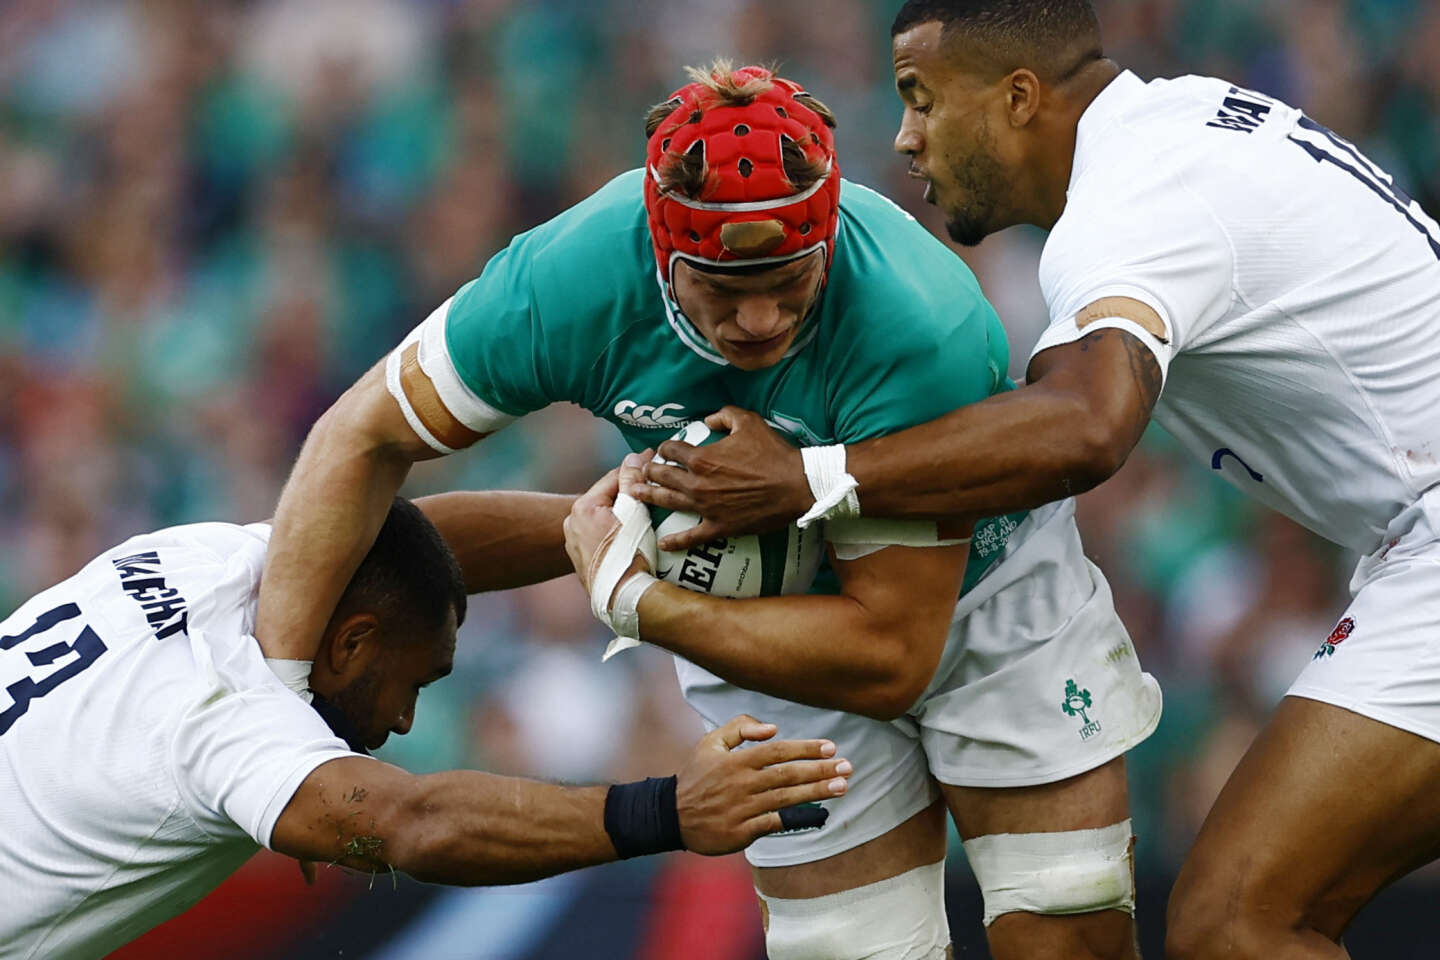 Coupe du monde de rugby 2023 : l’Irlandais Josh van der Flier, ce si discret meilleur joueur du monde